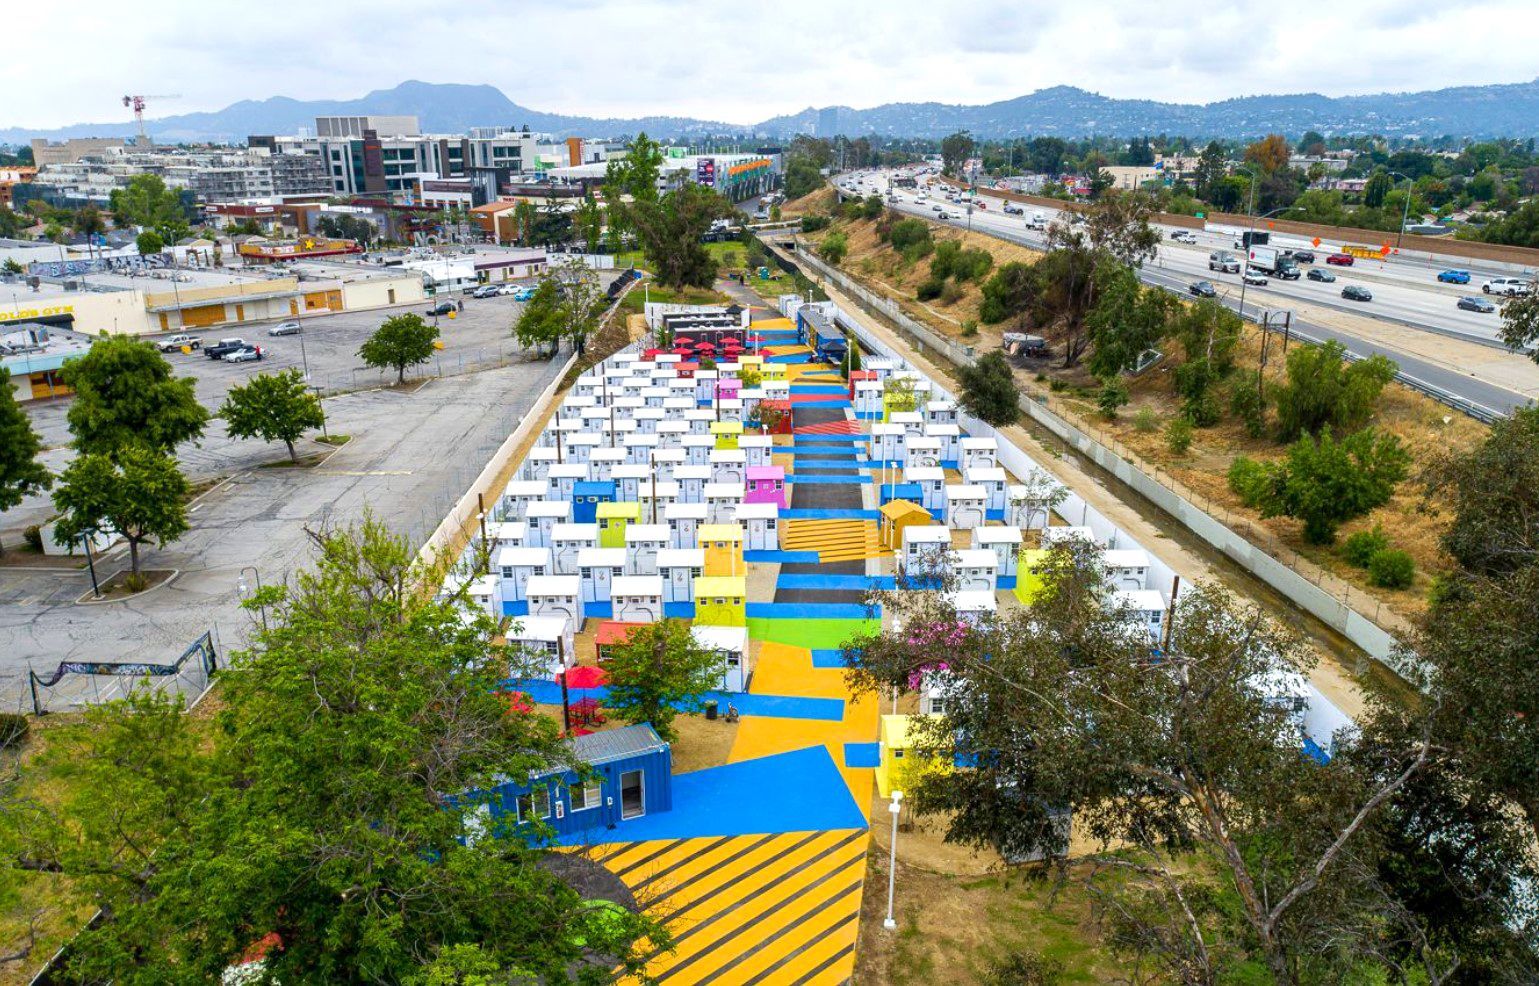 Різнобарвний район: у Лос-Анджелесі збудували будиночки для безхатченків 